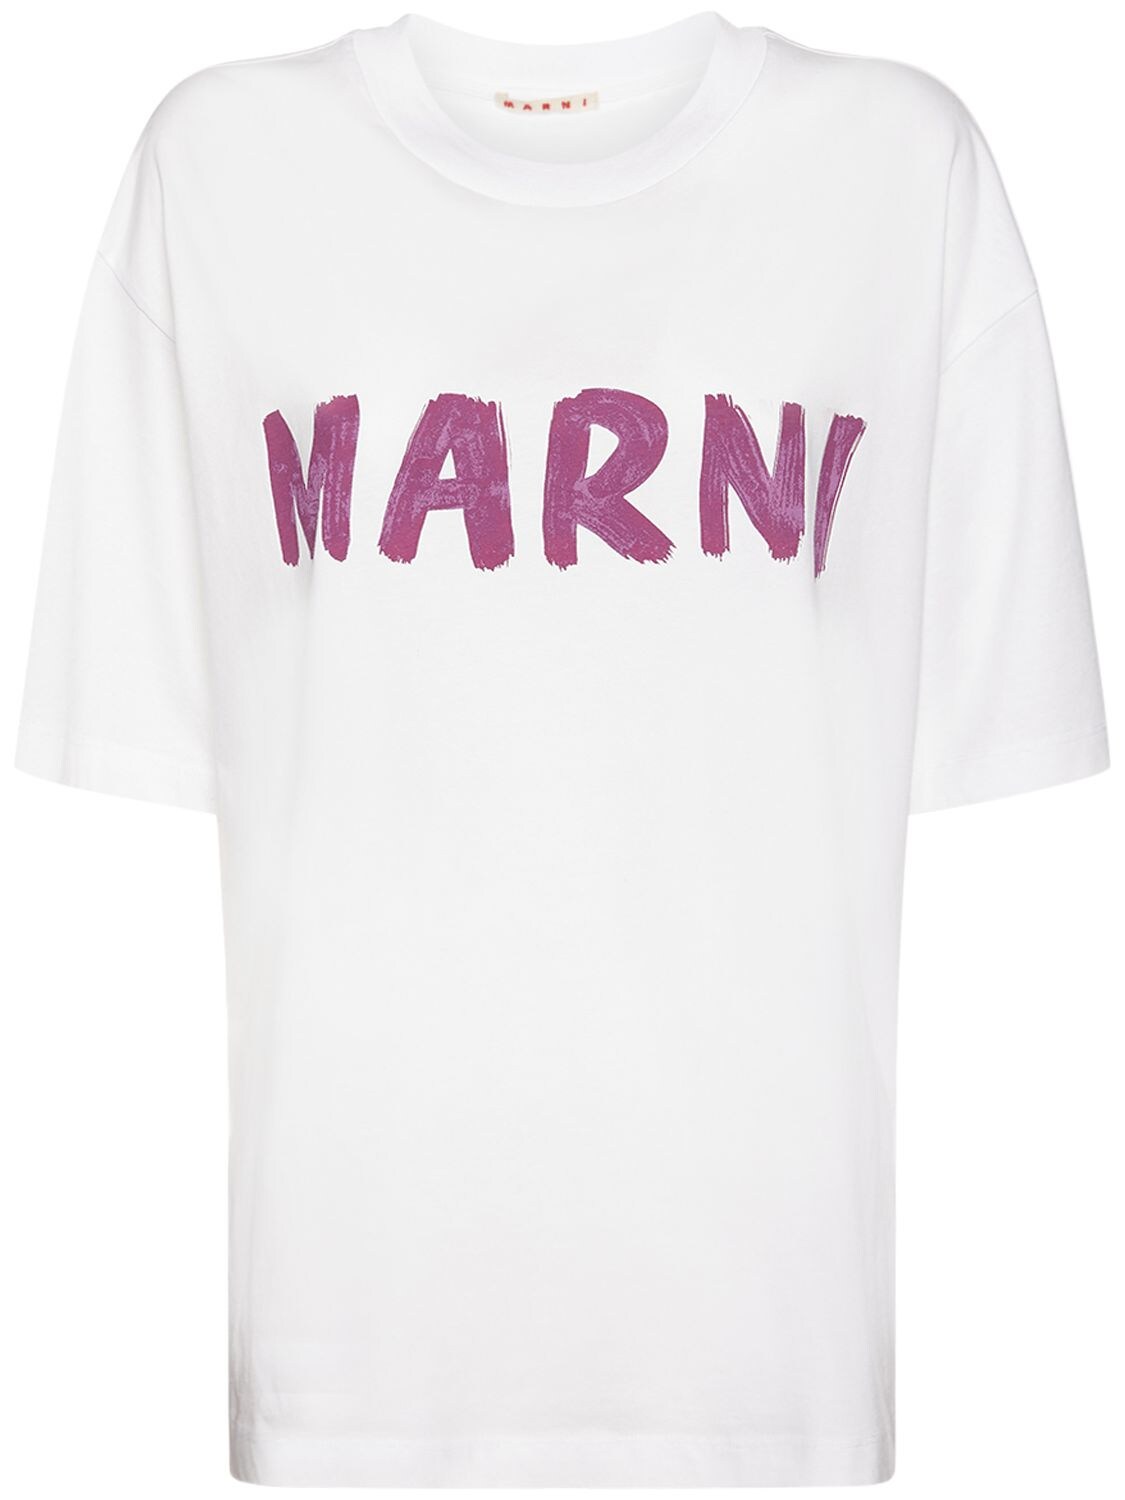 Marni - Marni logo print cotton jersey t-shirt - White | Luisaviaroma